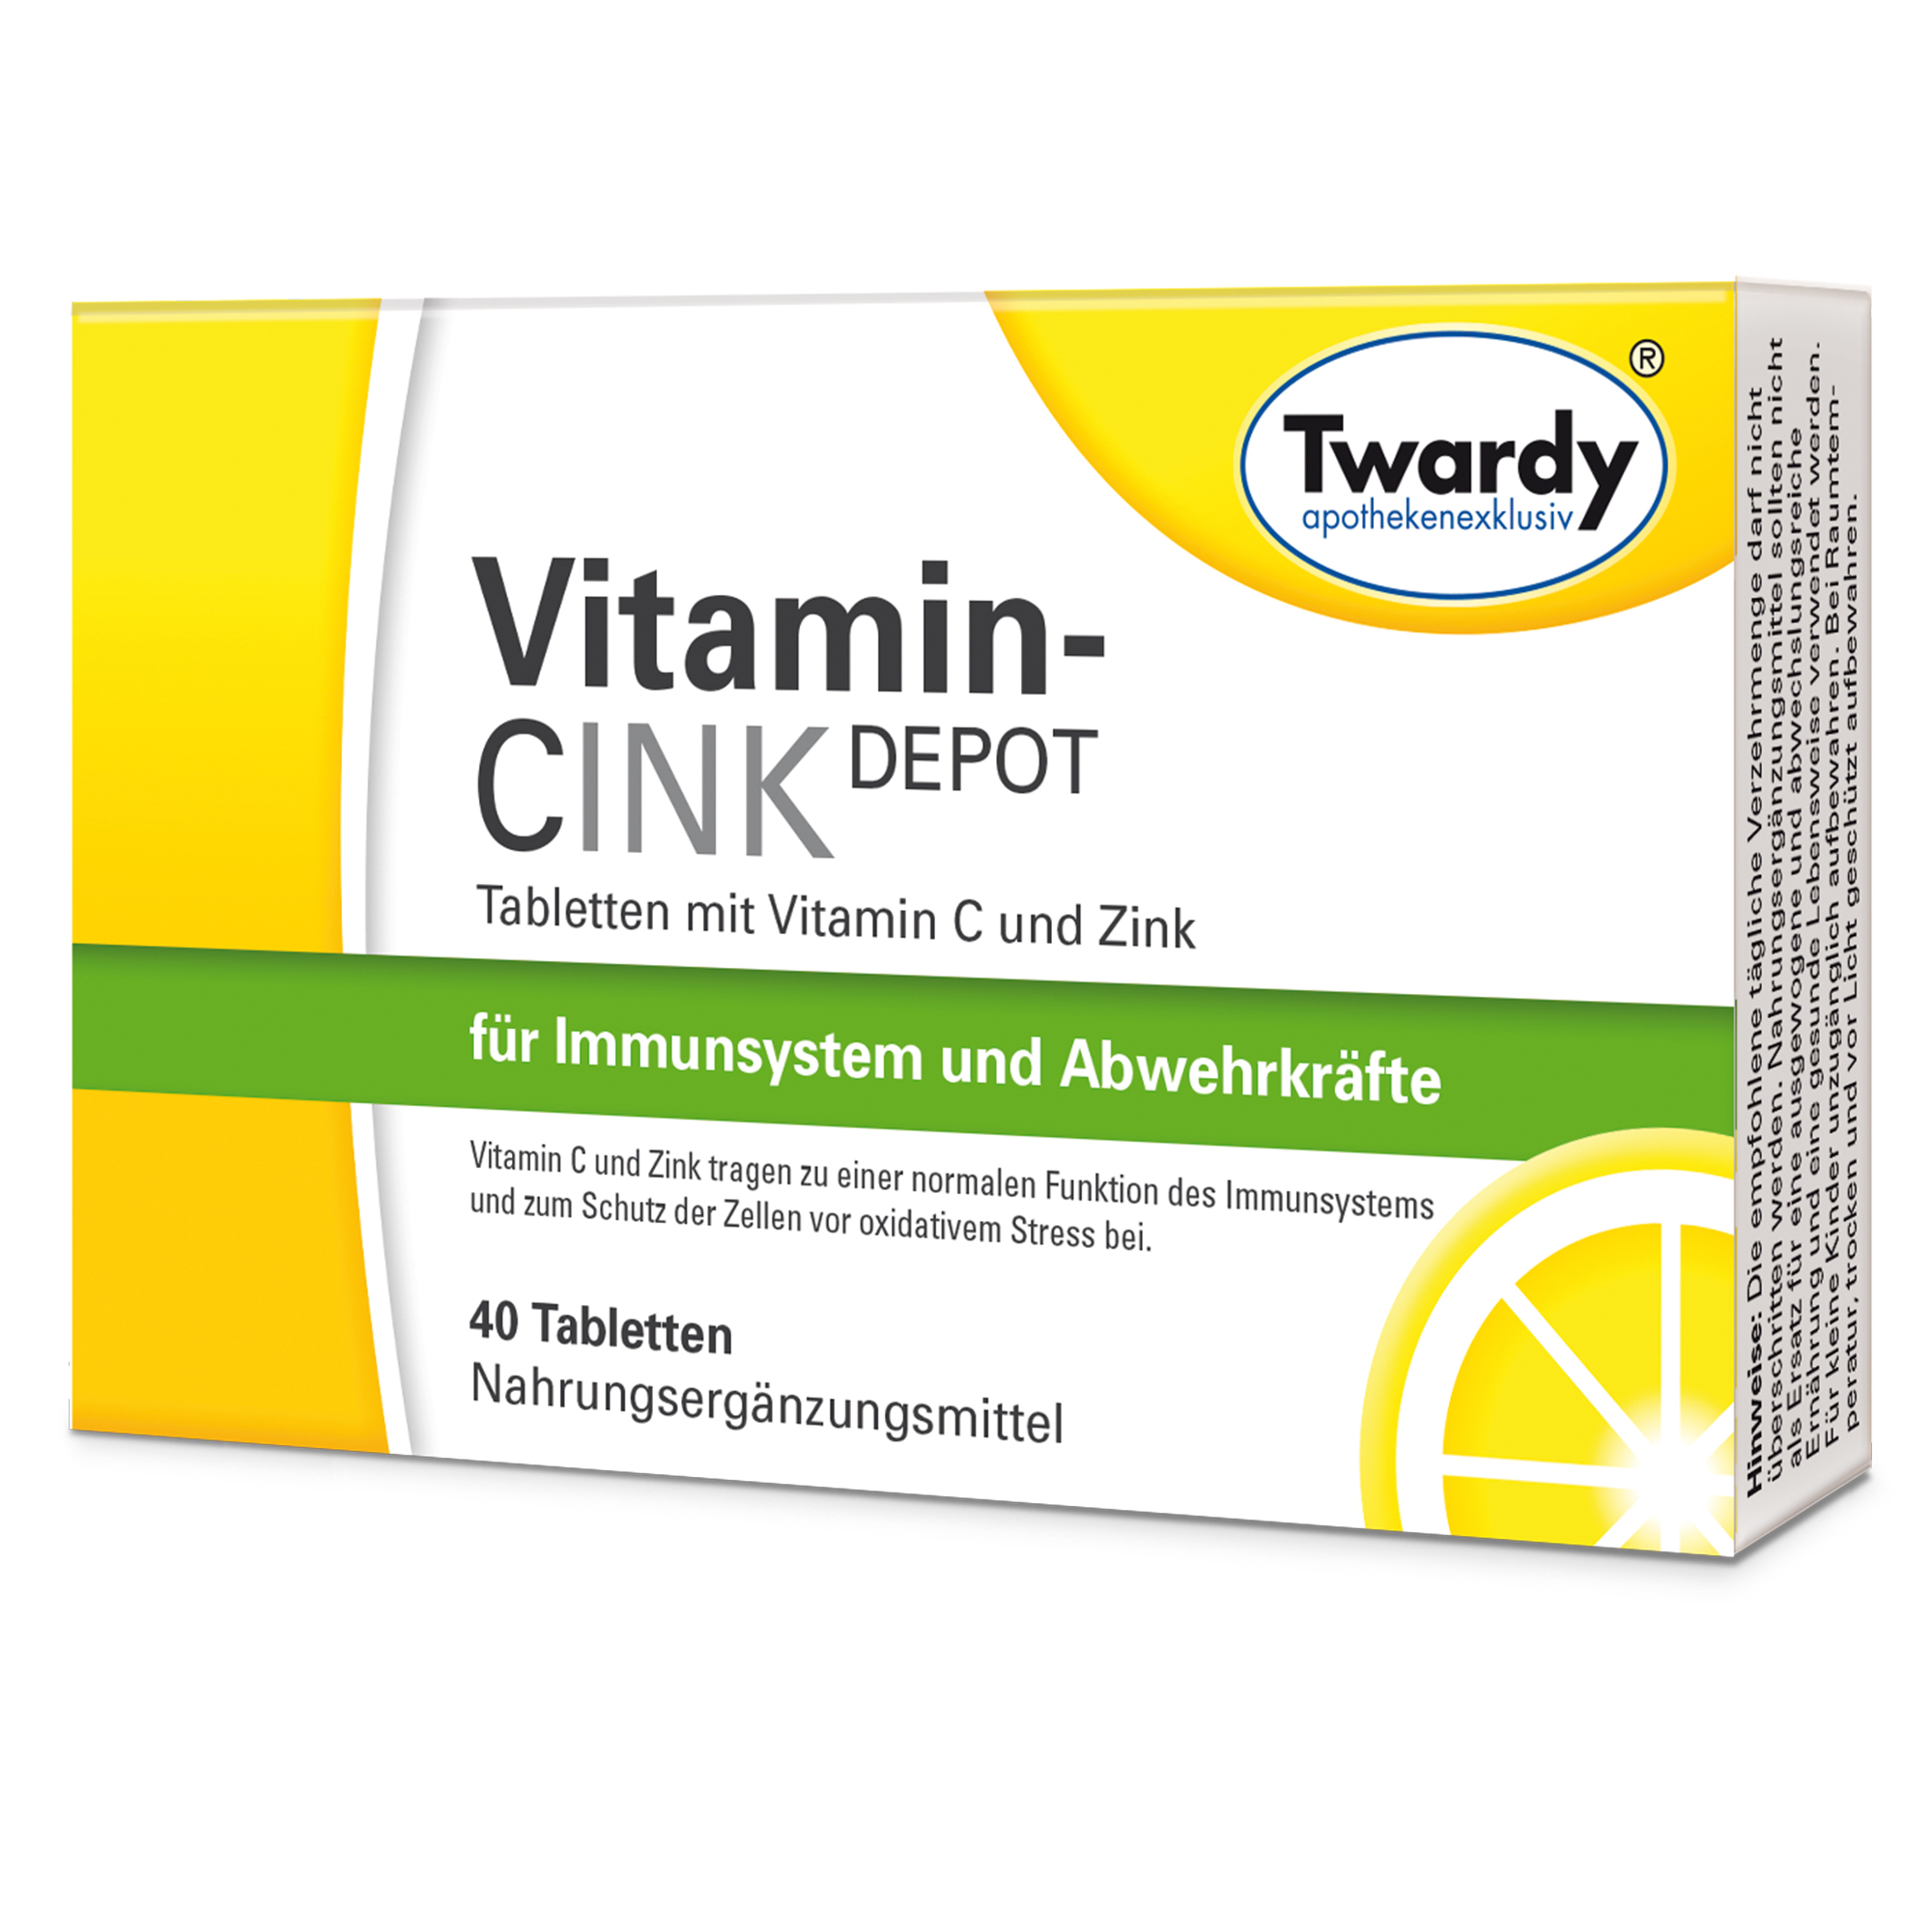 Vitamin-CINK DEPOT Tabletten